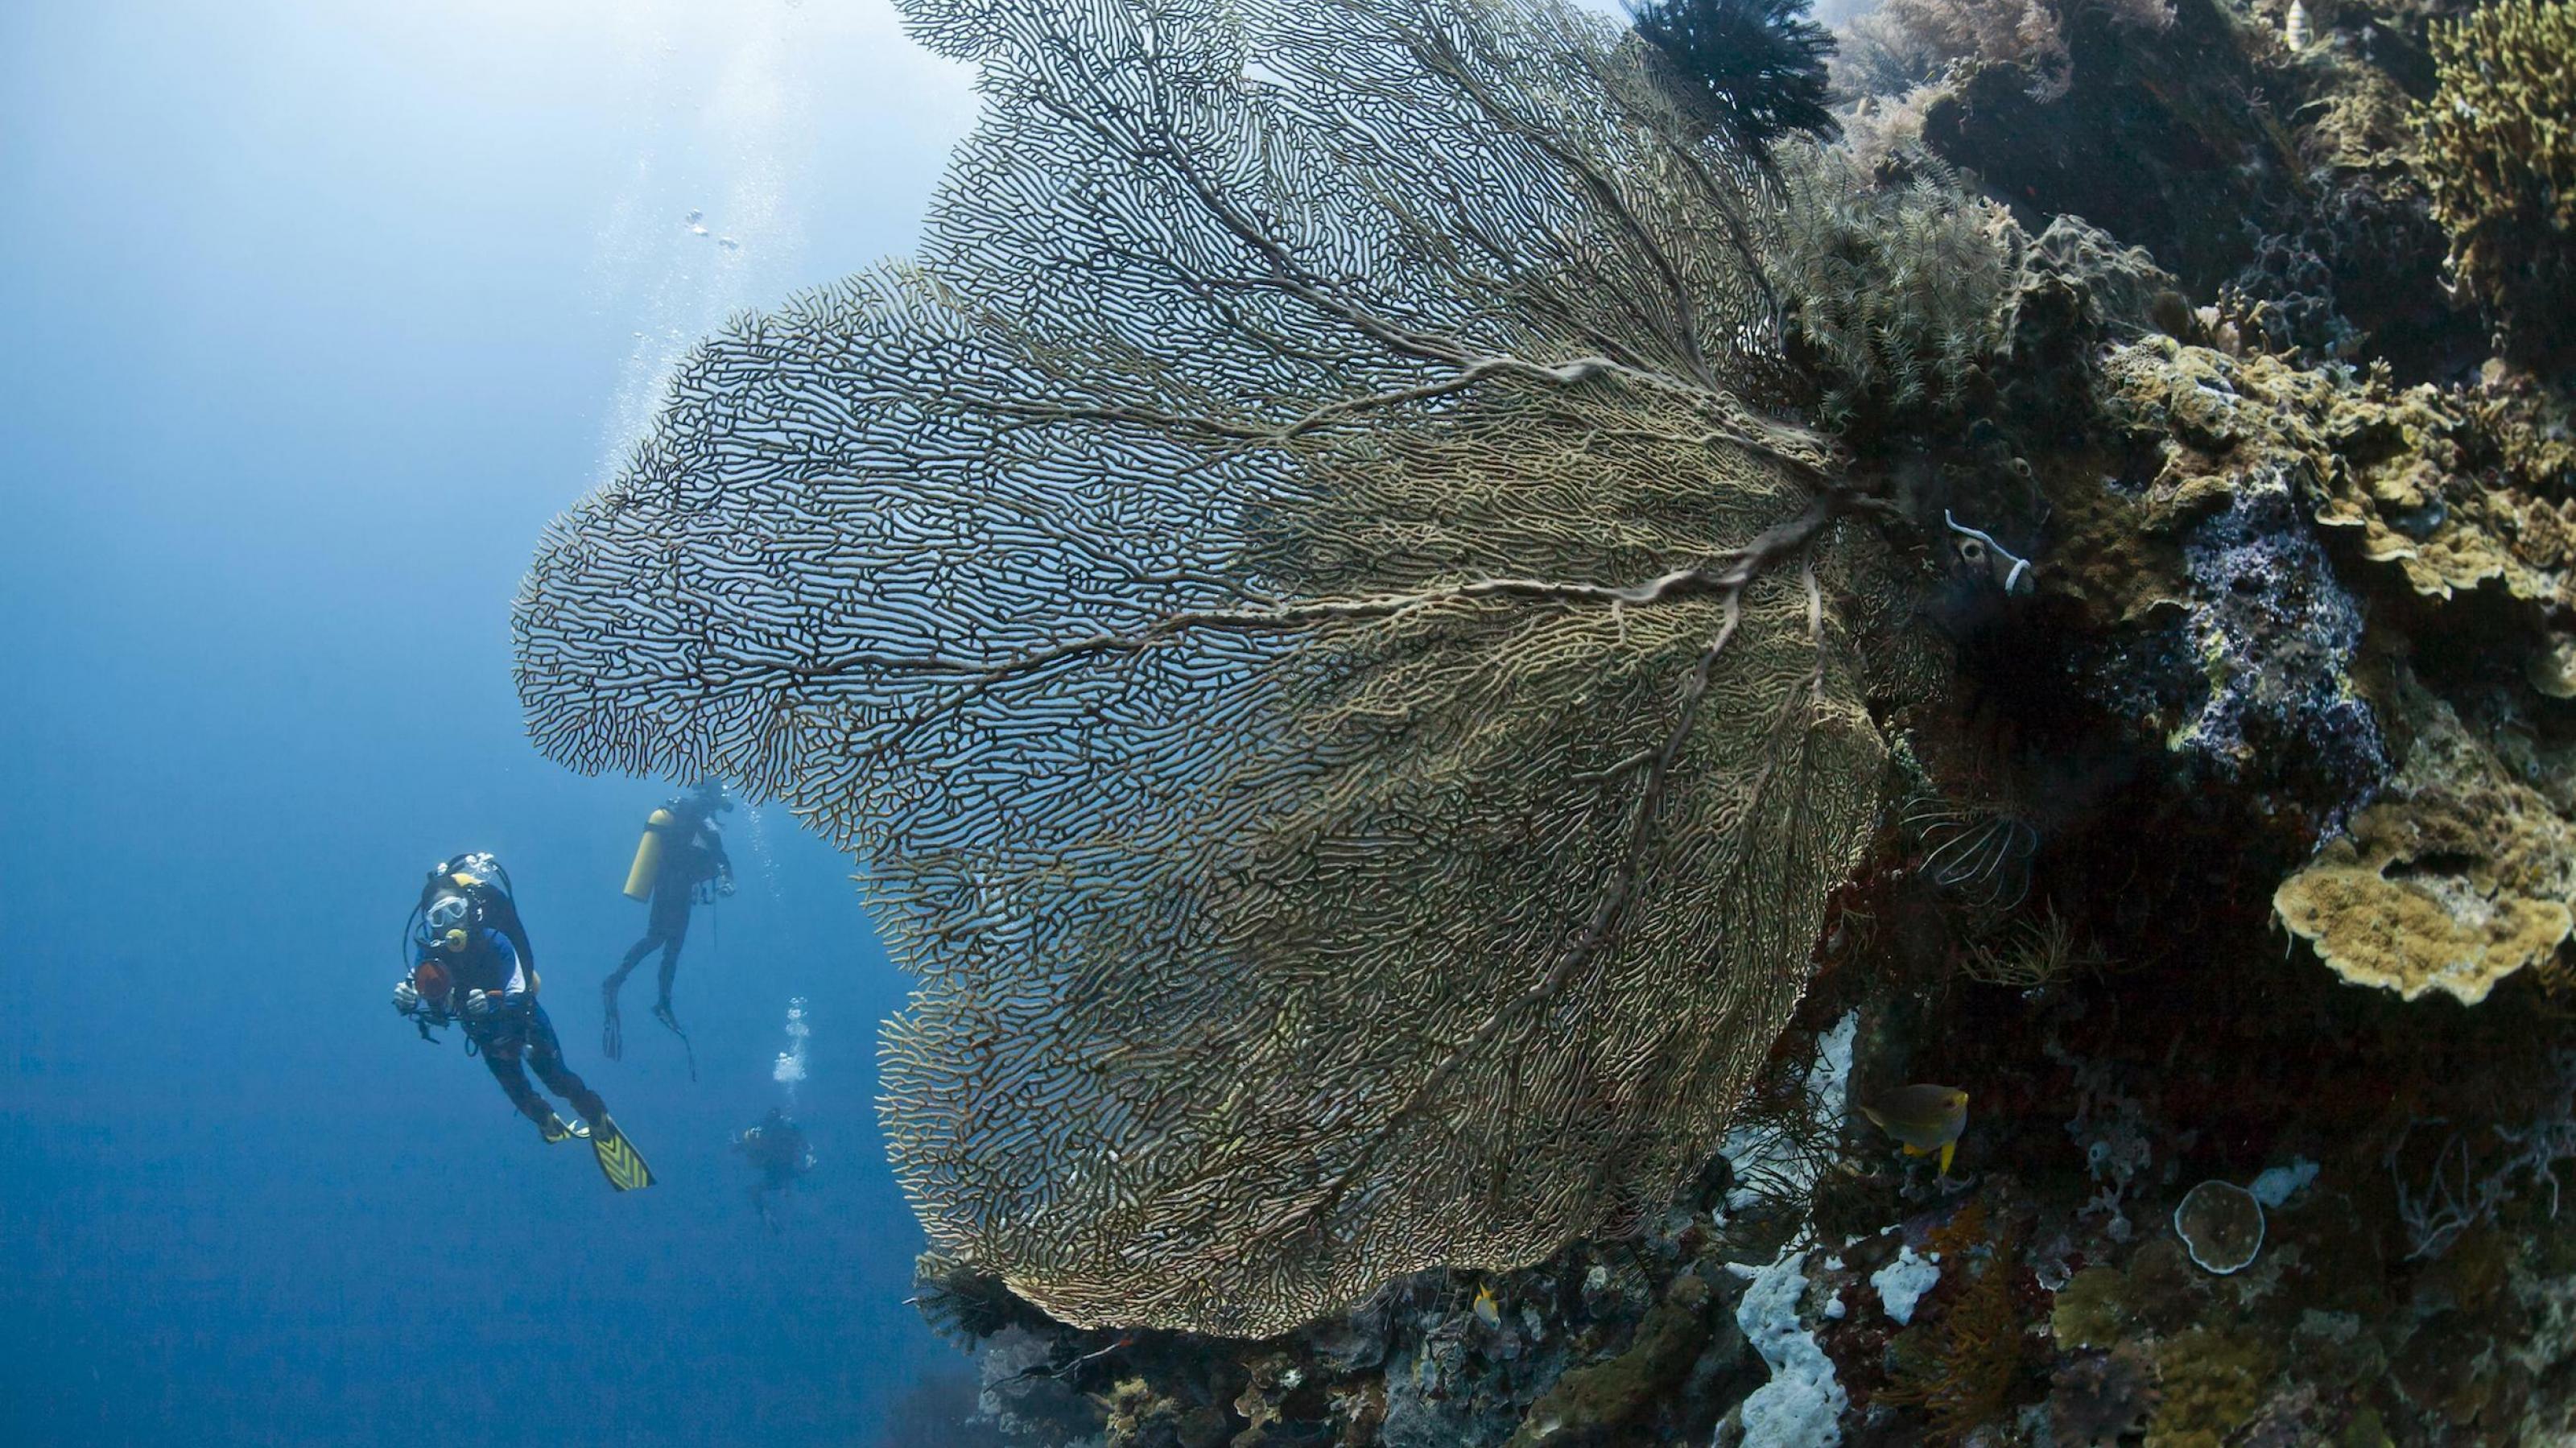 Taucher im Meer vor einer fächerförmigen Koralle.